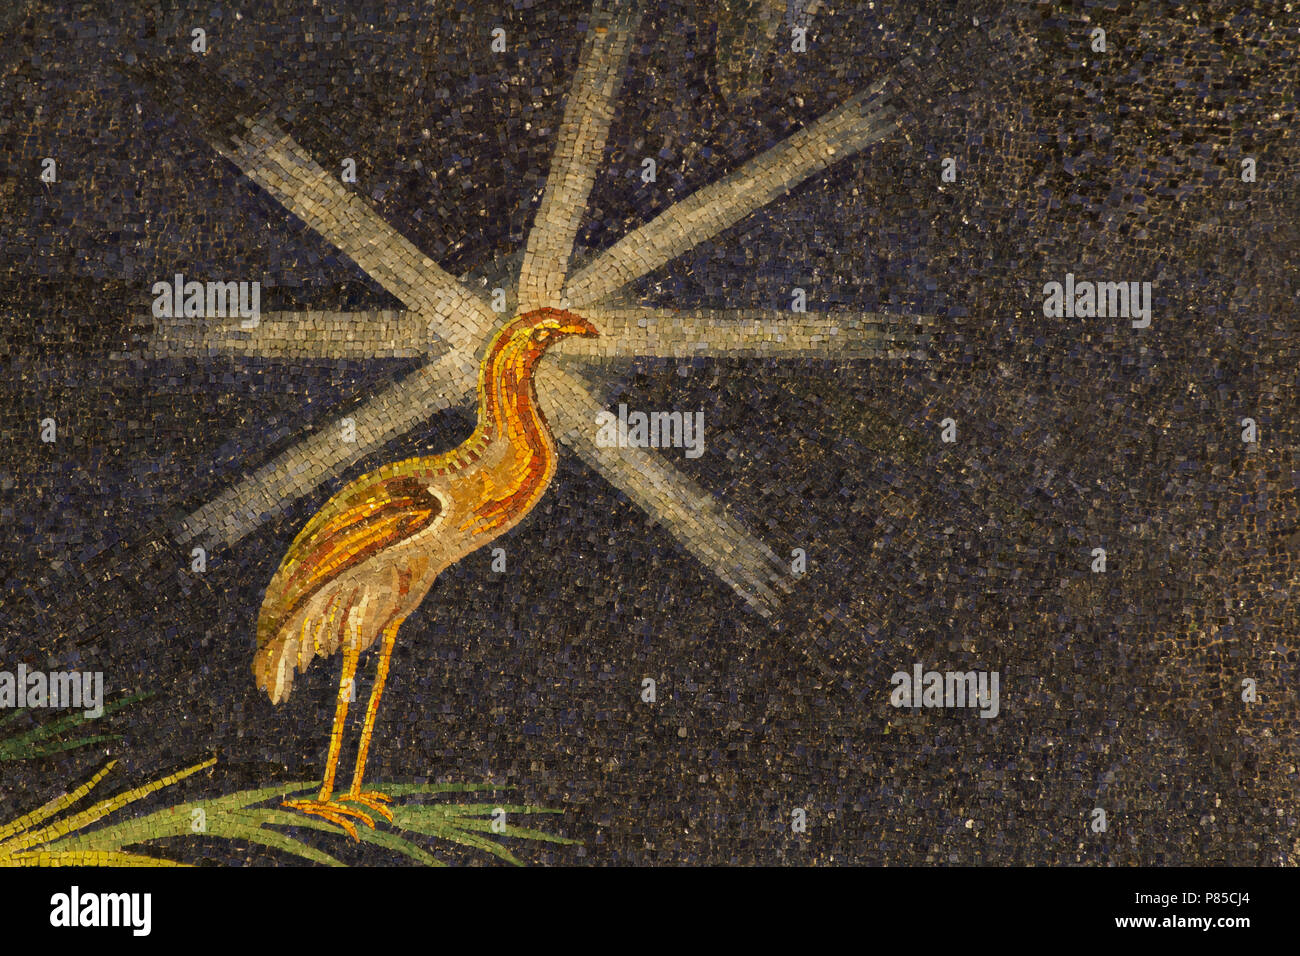 Peacock - Détail de la mosaïque de l'abside du vie siècle (530 AC) - Chef d'œuvre de l'Art Chrétien - la Basilique Santi Cosma e Damiano - Rome Banque D'Images